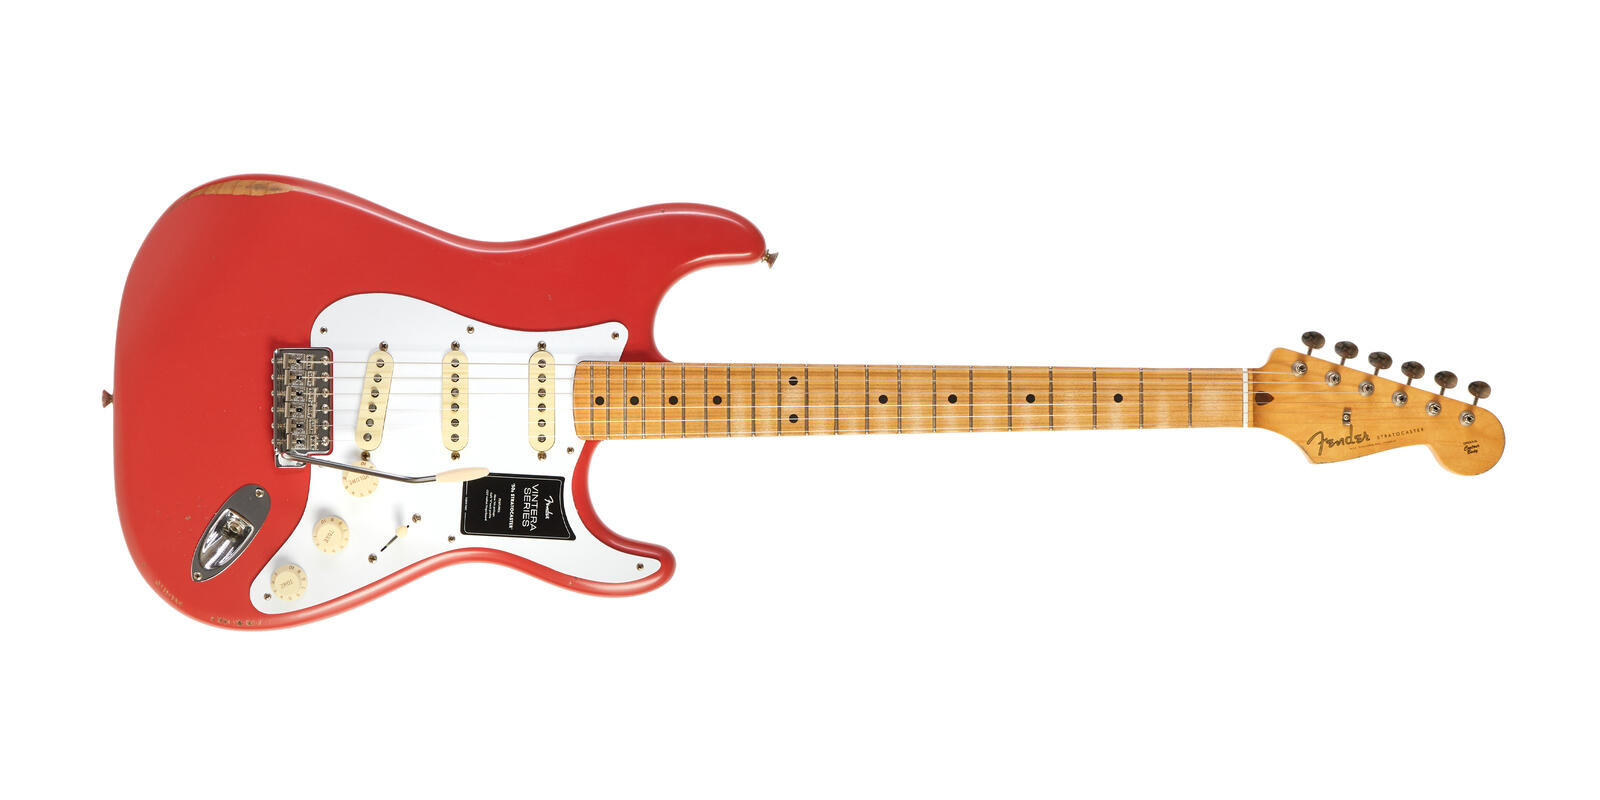 Fender Fiesta Road Red Stratocaster Maple Village Guitar - Worn / 50s Vintera